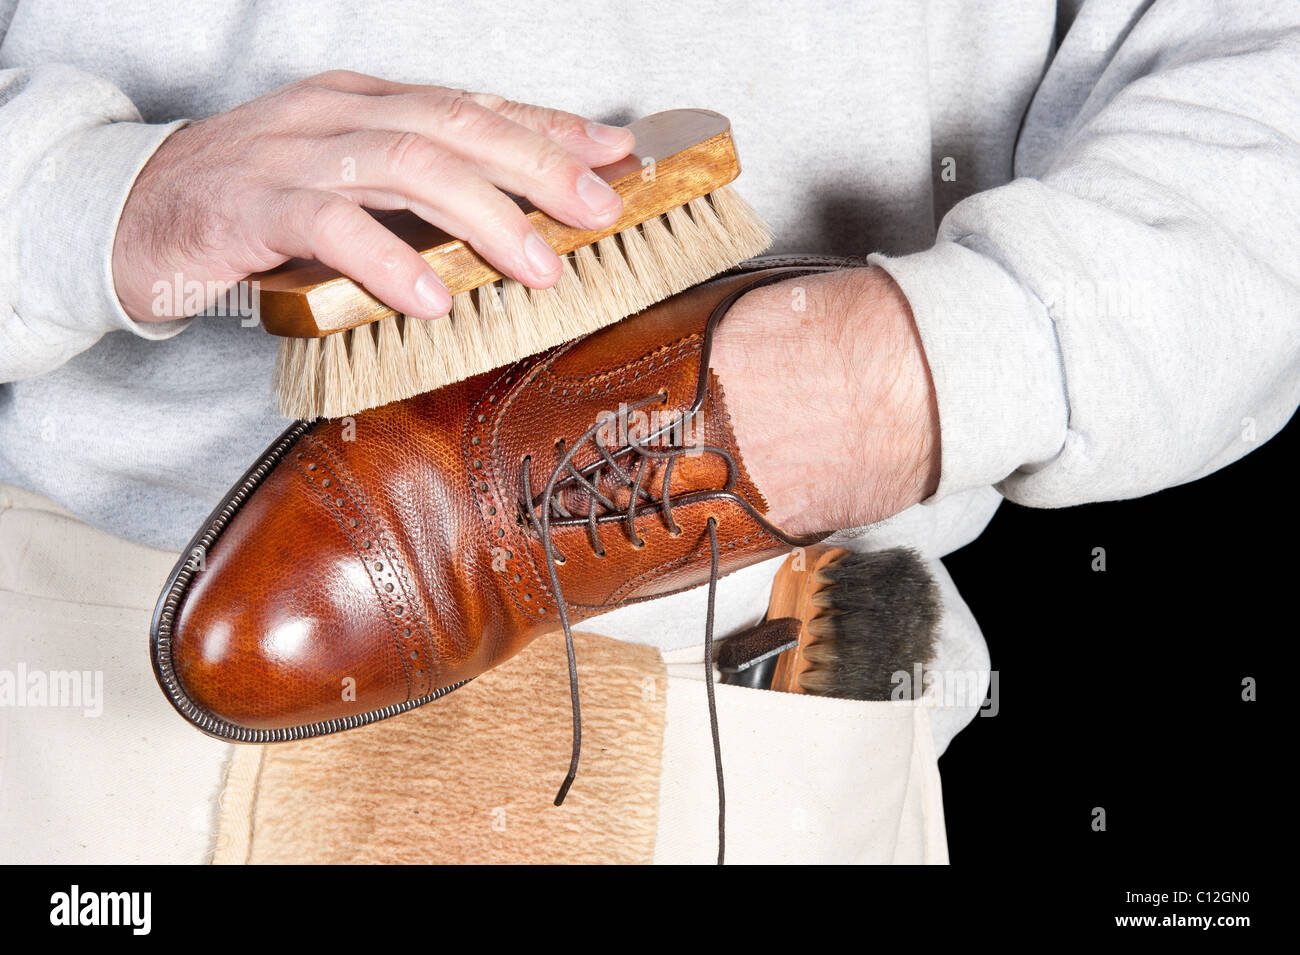 A shoeshine man polishing a leather dress shoe Stock Photo